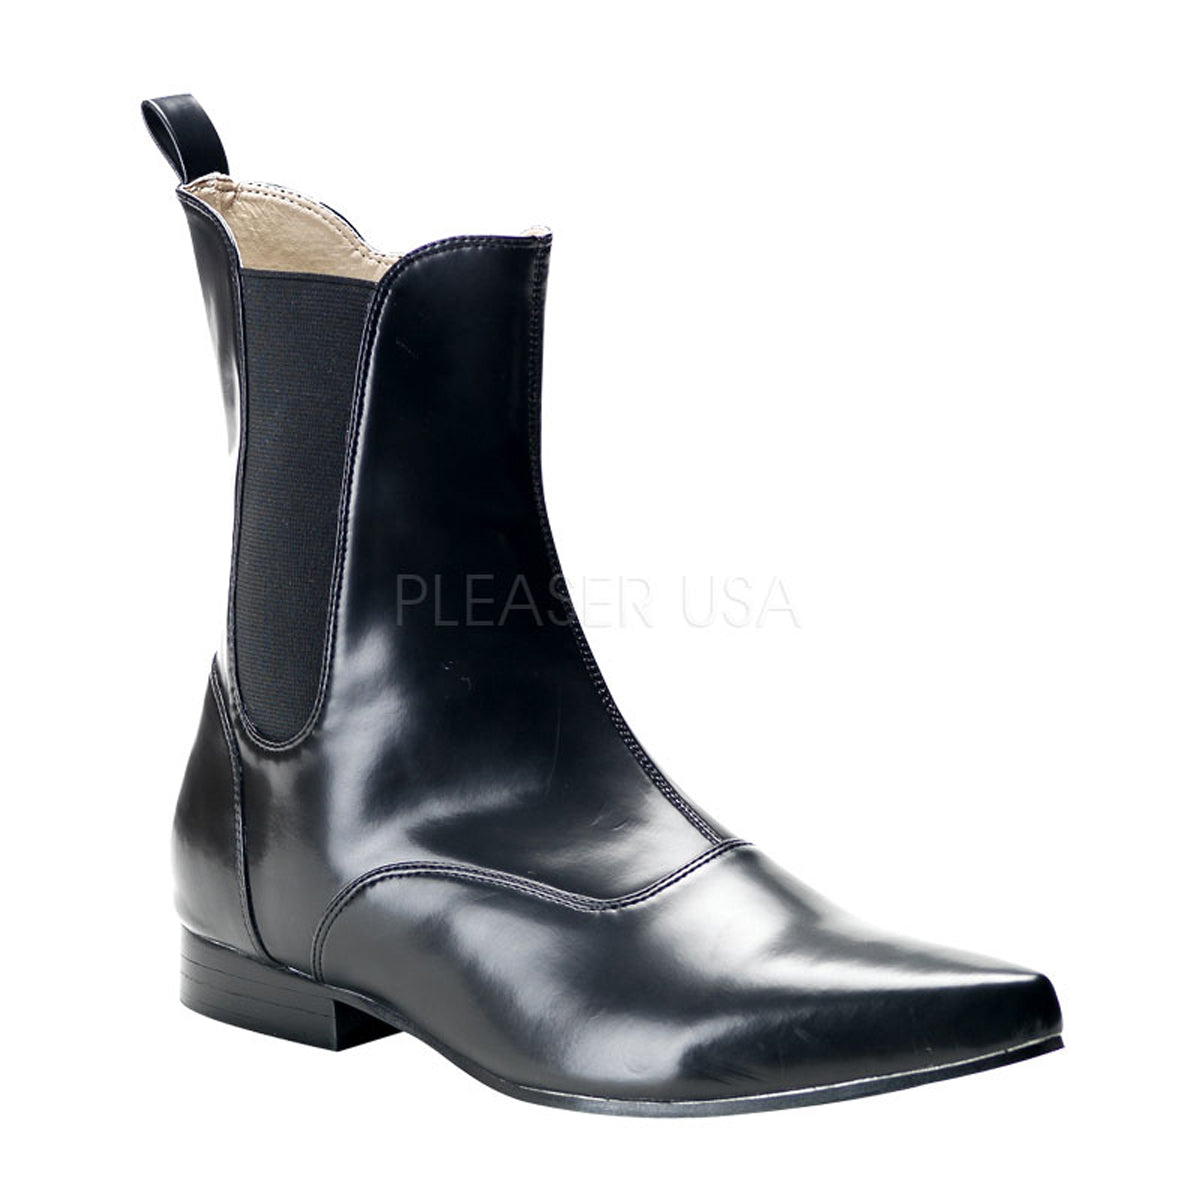 winklepicker chelsea boots